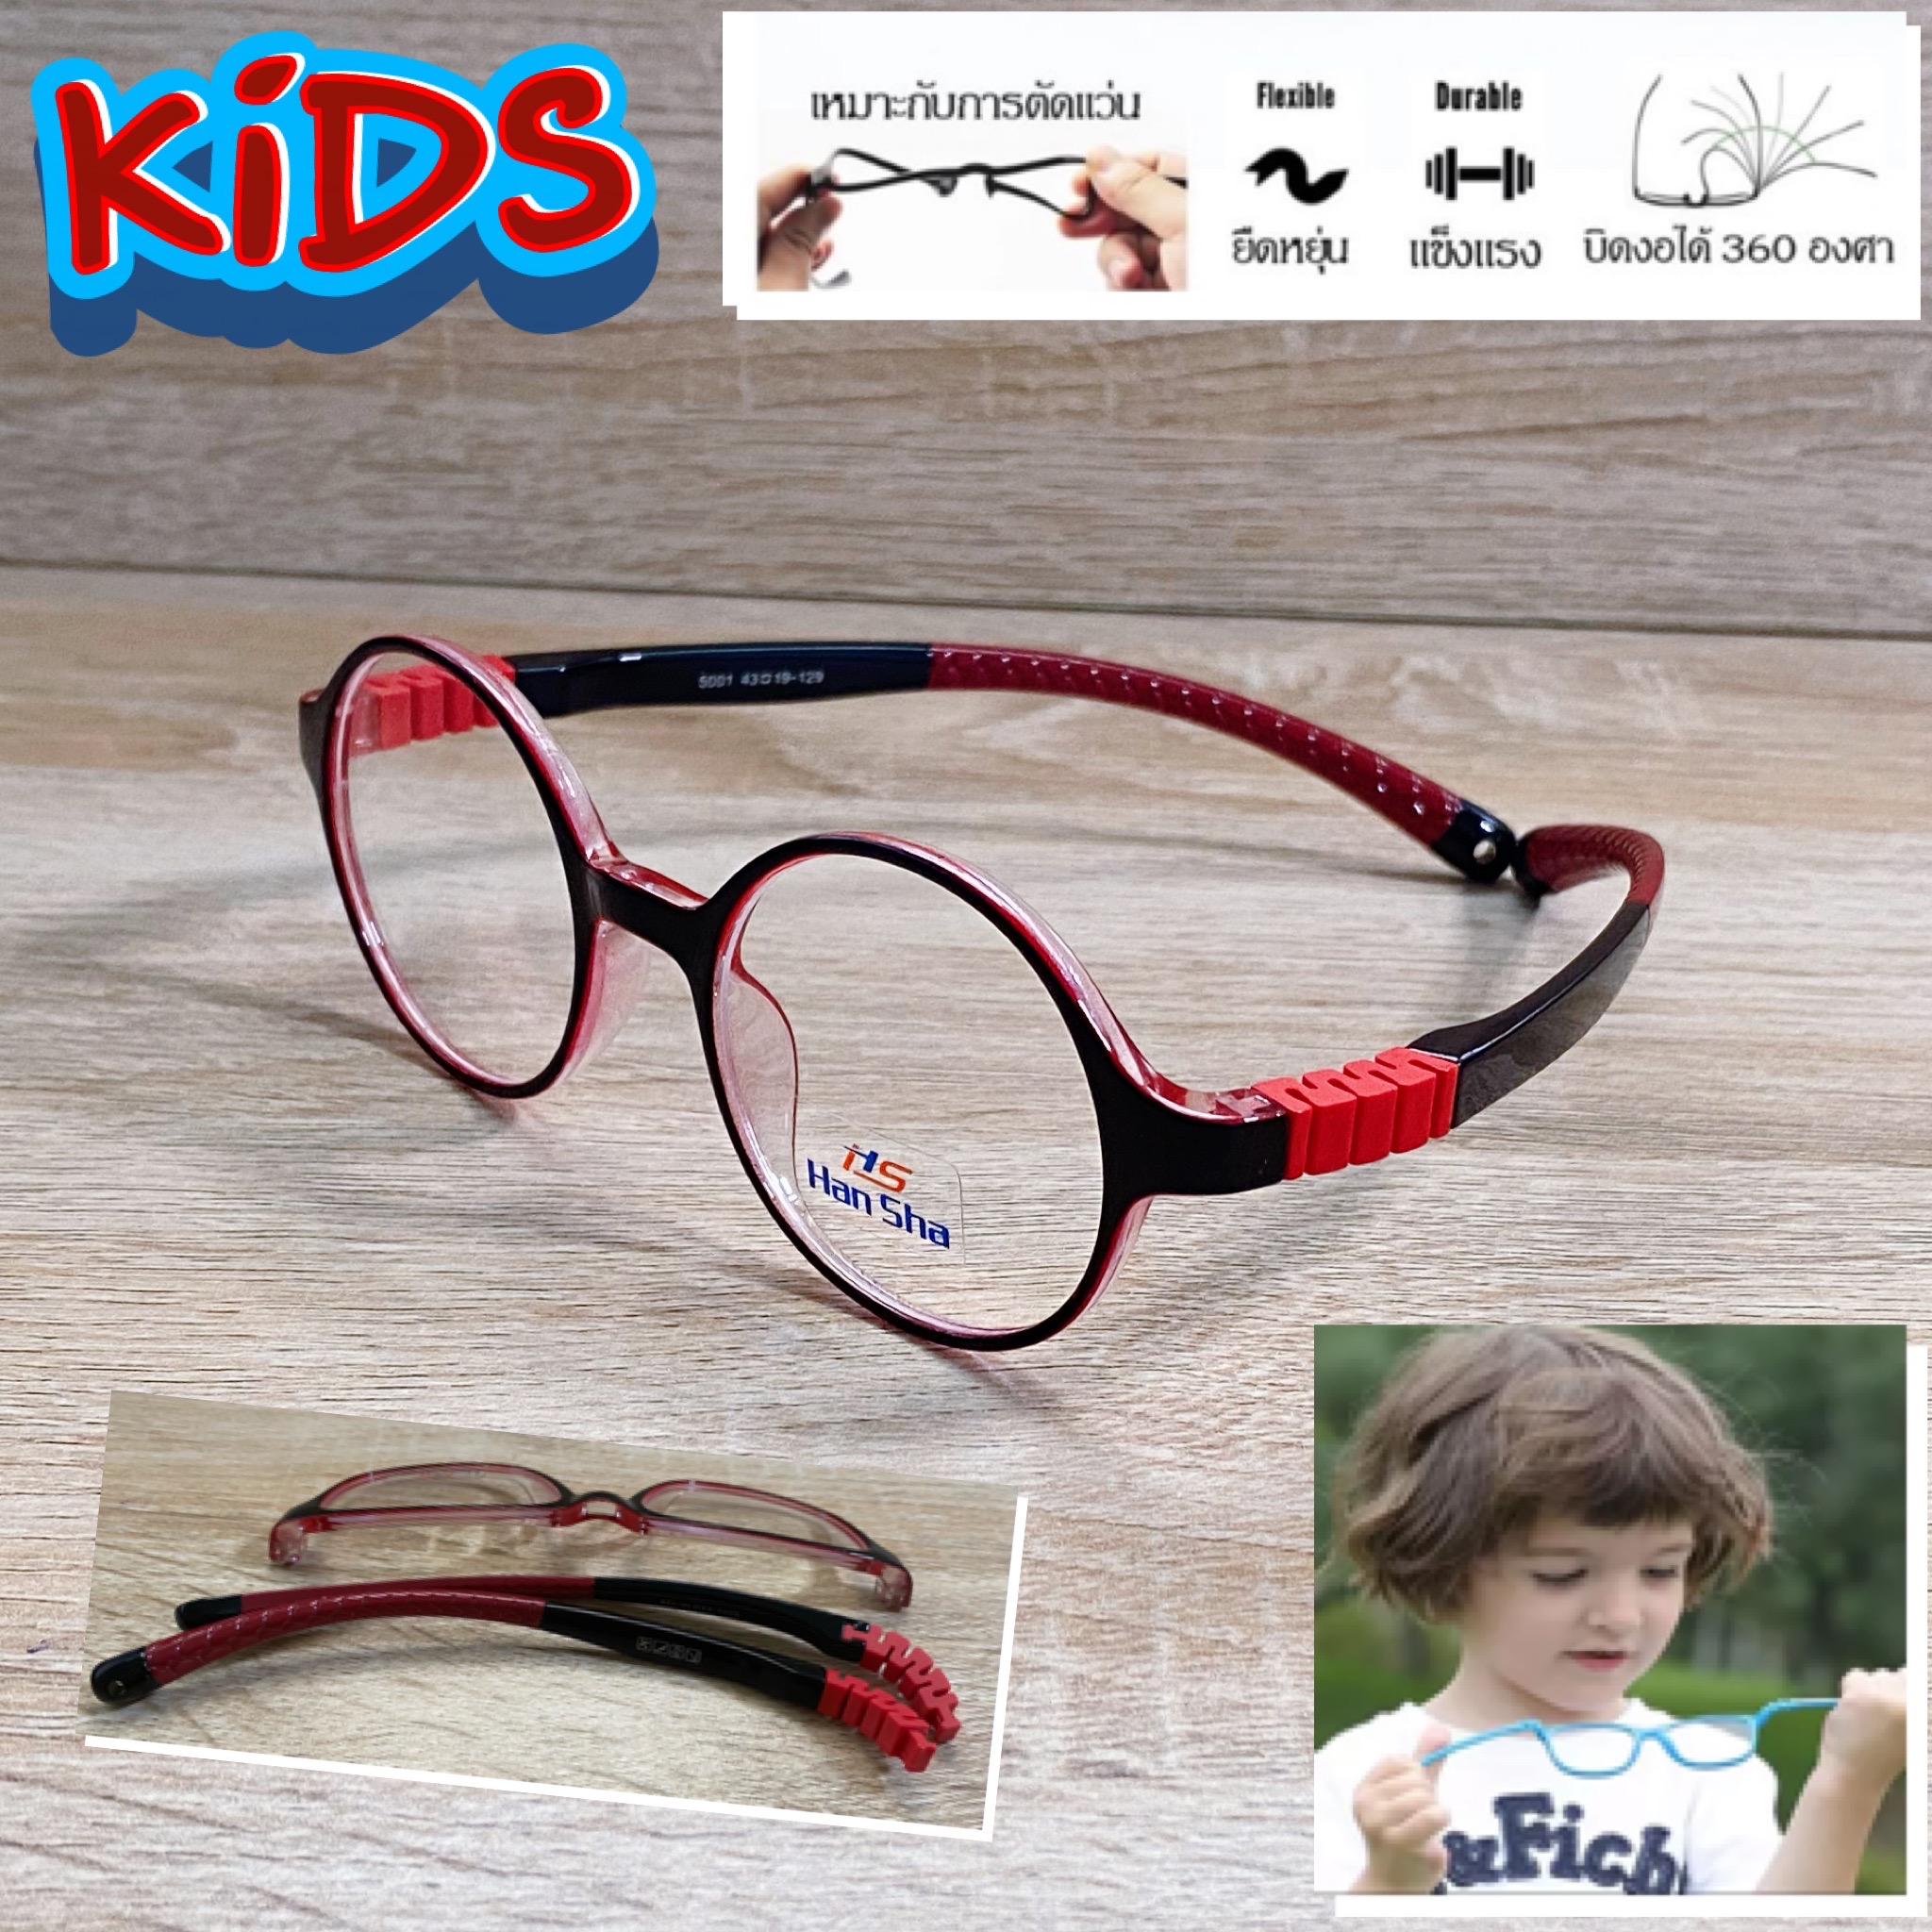 แว่นตาเด็ก กรอบแว่นตาเด็ก สำหรับตัดเลนส์ แว่นตา Han Sha รุ่น 5001 สีดำใส ขาไม่ใช้น็อต ยืดหยุ่น ถอดขาเปลี่ยนได้ วัสดุ TR 90 เบา ไม่แตกหัก